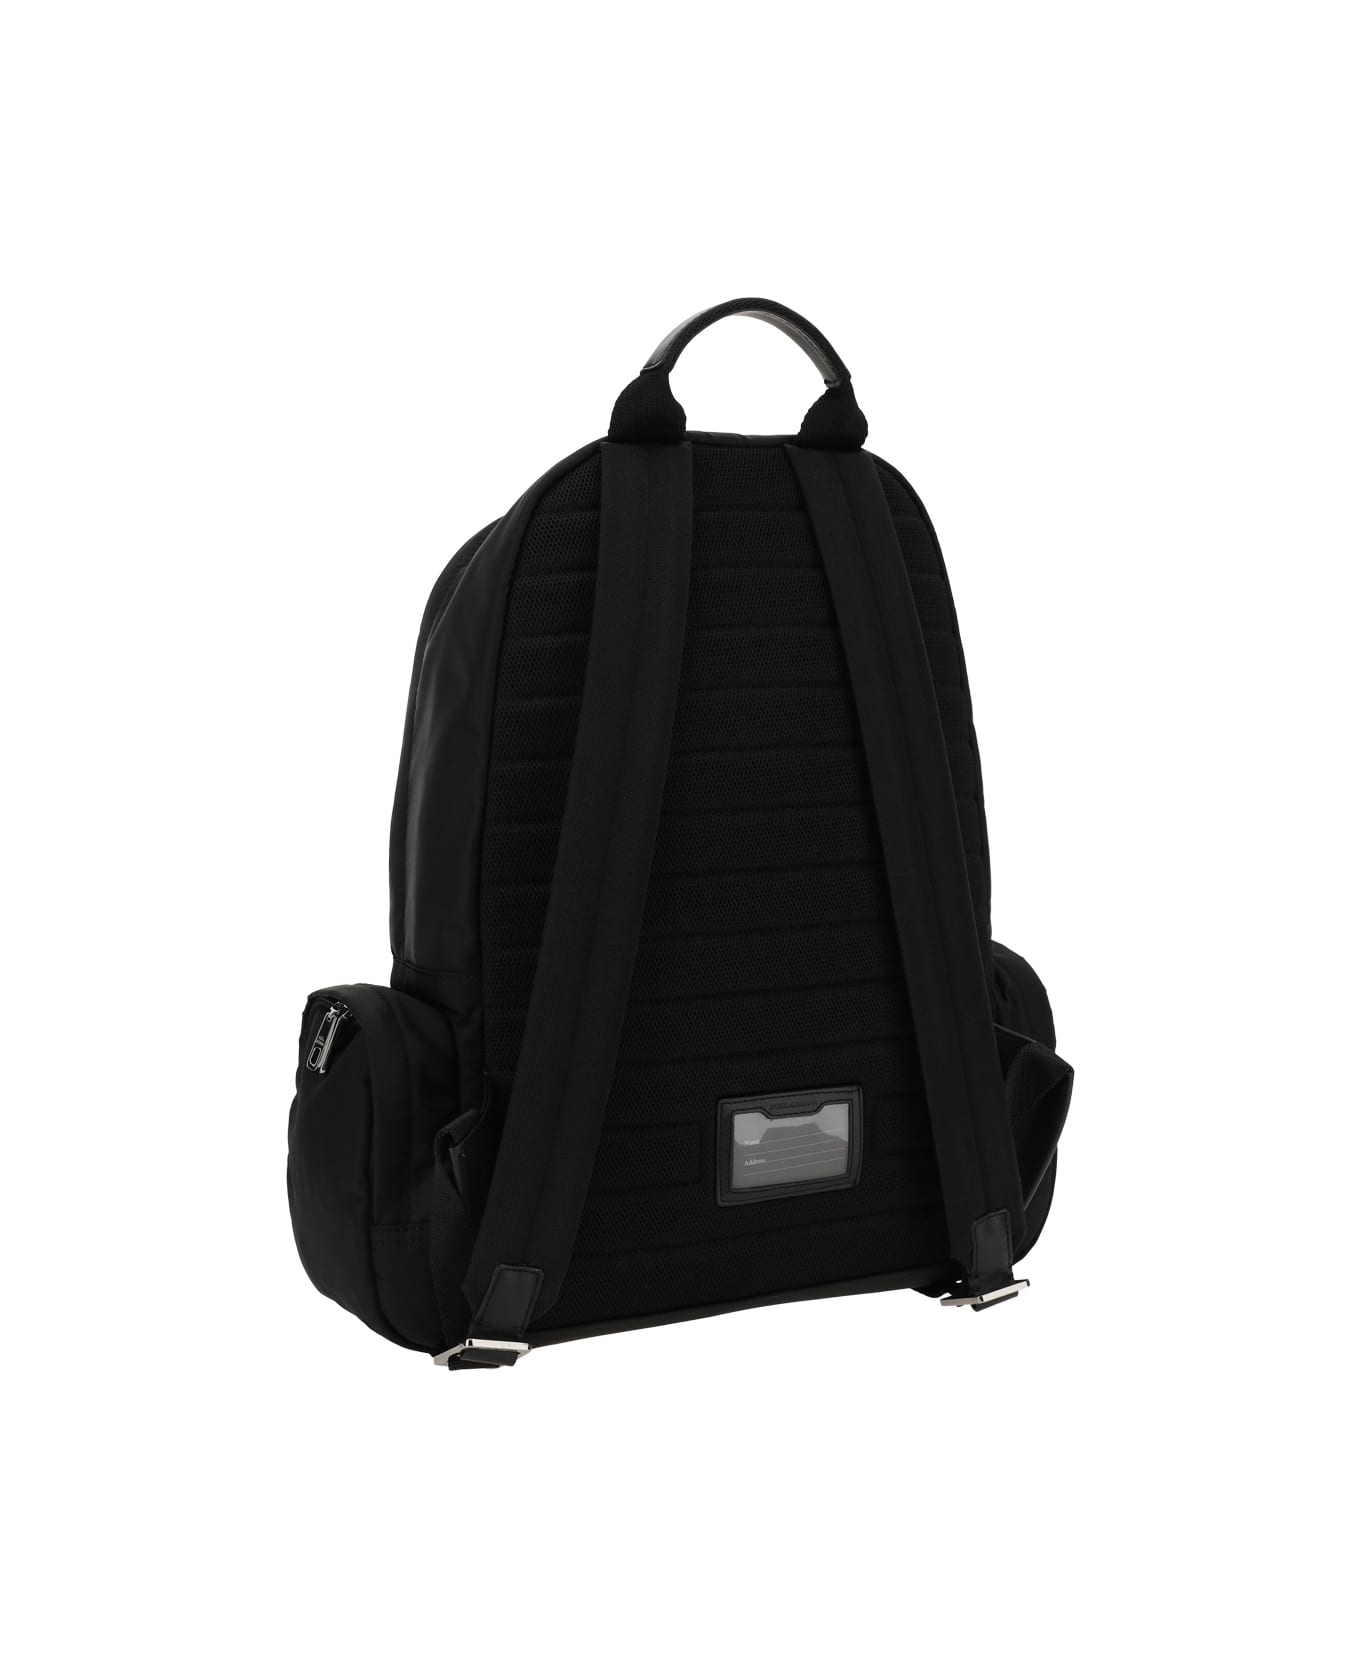 Dolce & Gabbana Backpack - Nero/nero